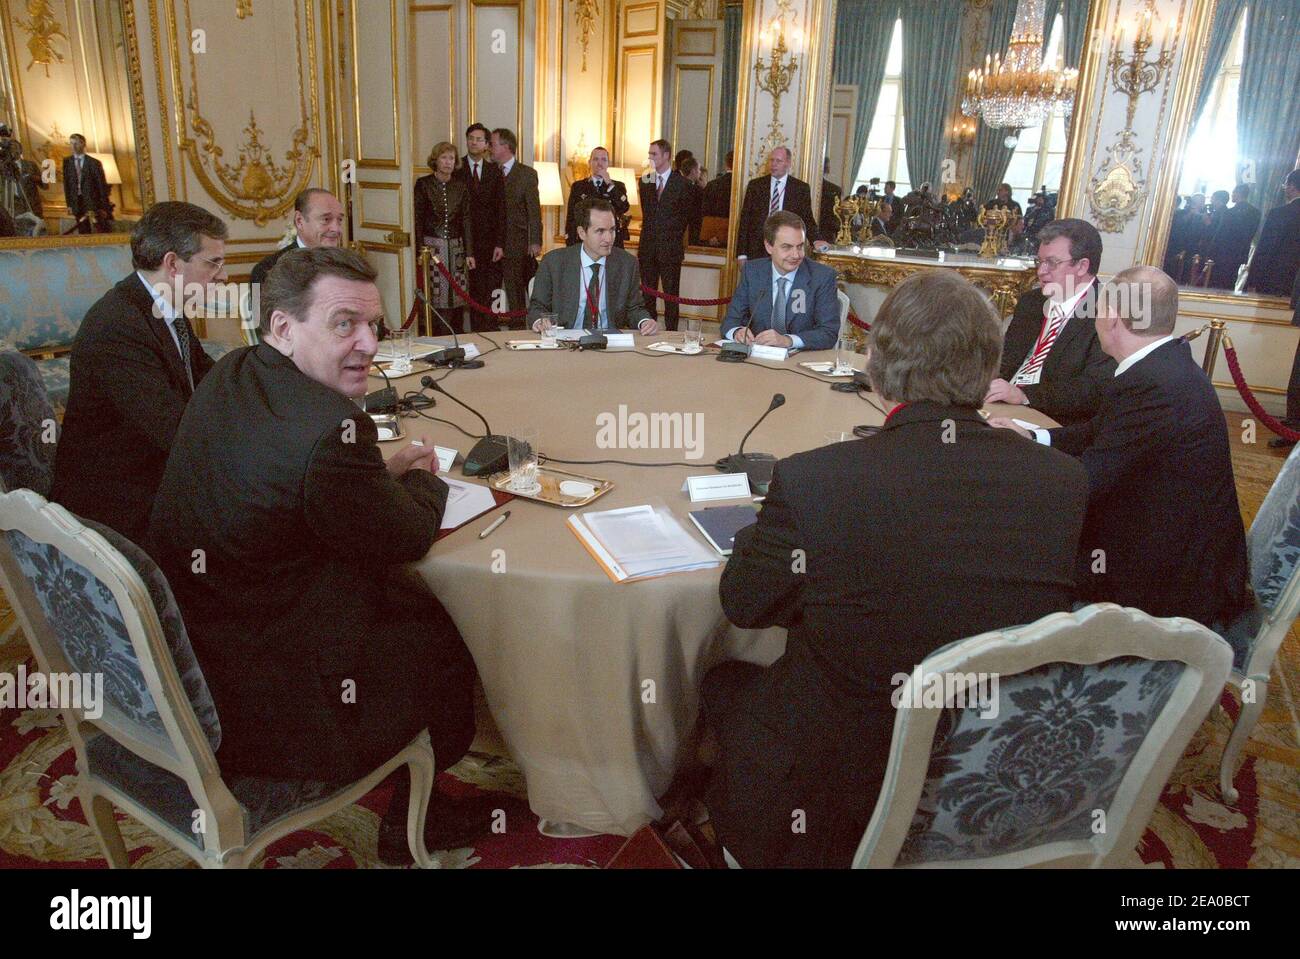 Treffen im Elysee-Palast in Paris, Frankreich am 18. März 2005 mit Präsident Wladimir Putin von Russland, Jacques Chirac von Frankreich, Bundeskanzler Gerhard Schröder von Deutschland und Premierminister Jose Luis Rodriguez Zapatero von Spanien. Foto von Elodie Gregoire/POOL/ABACA Stockfoto